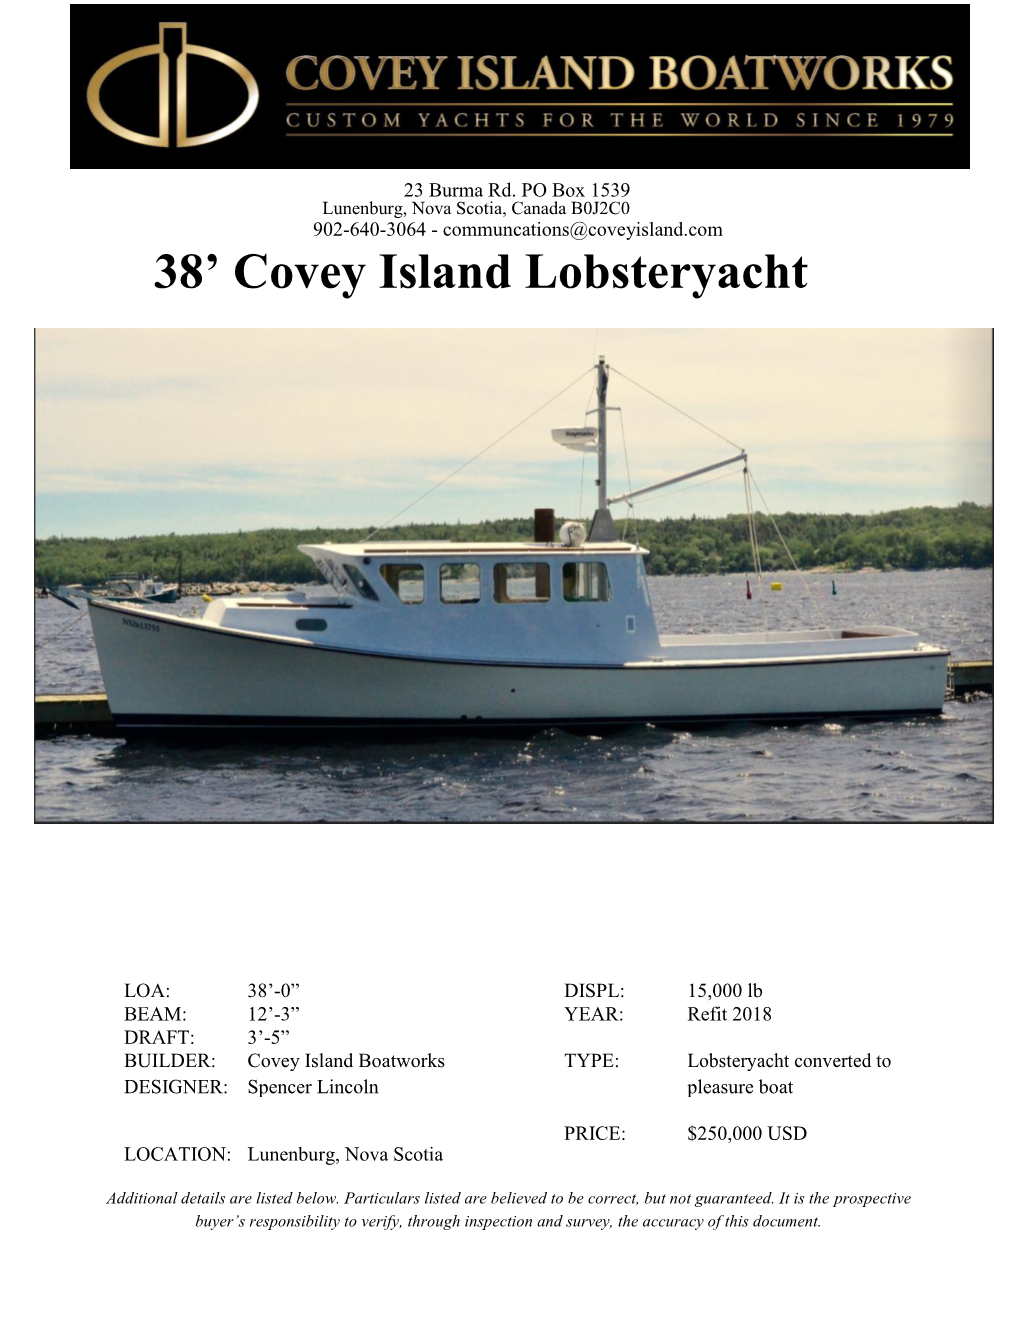 38' Covey Island Lobsteryacht